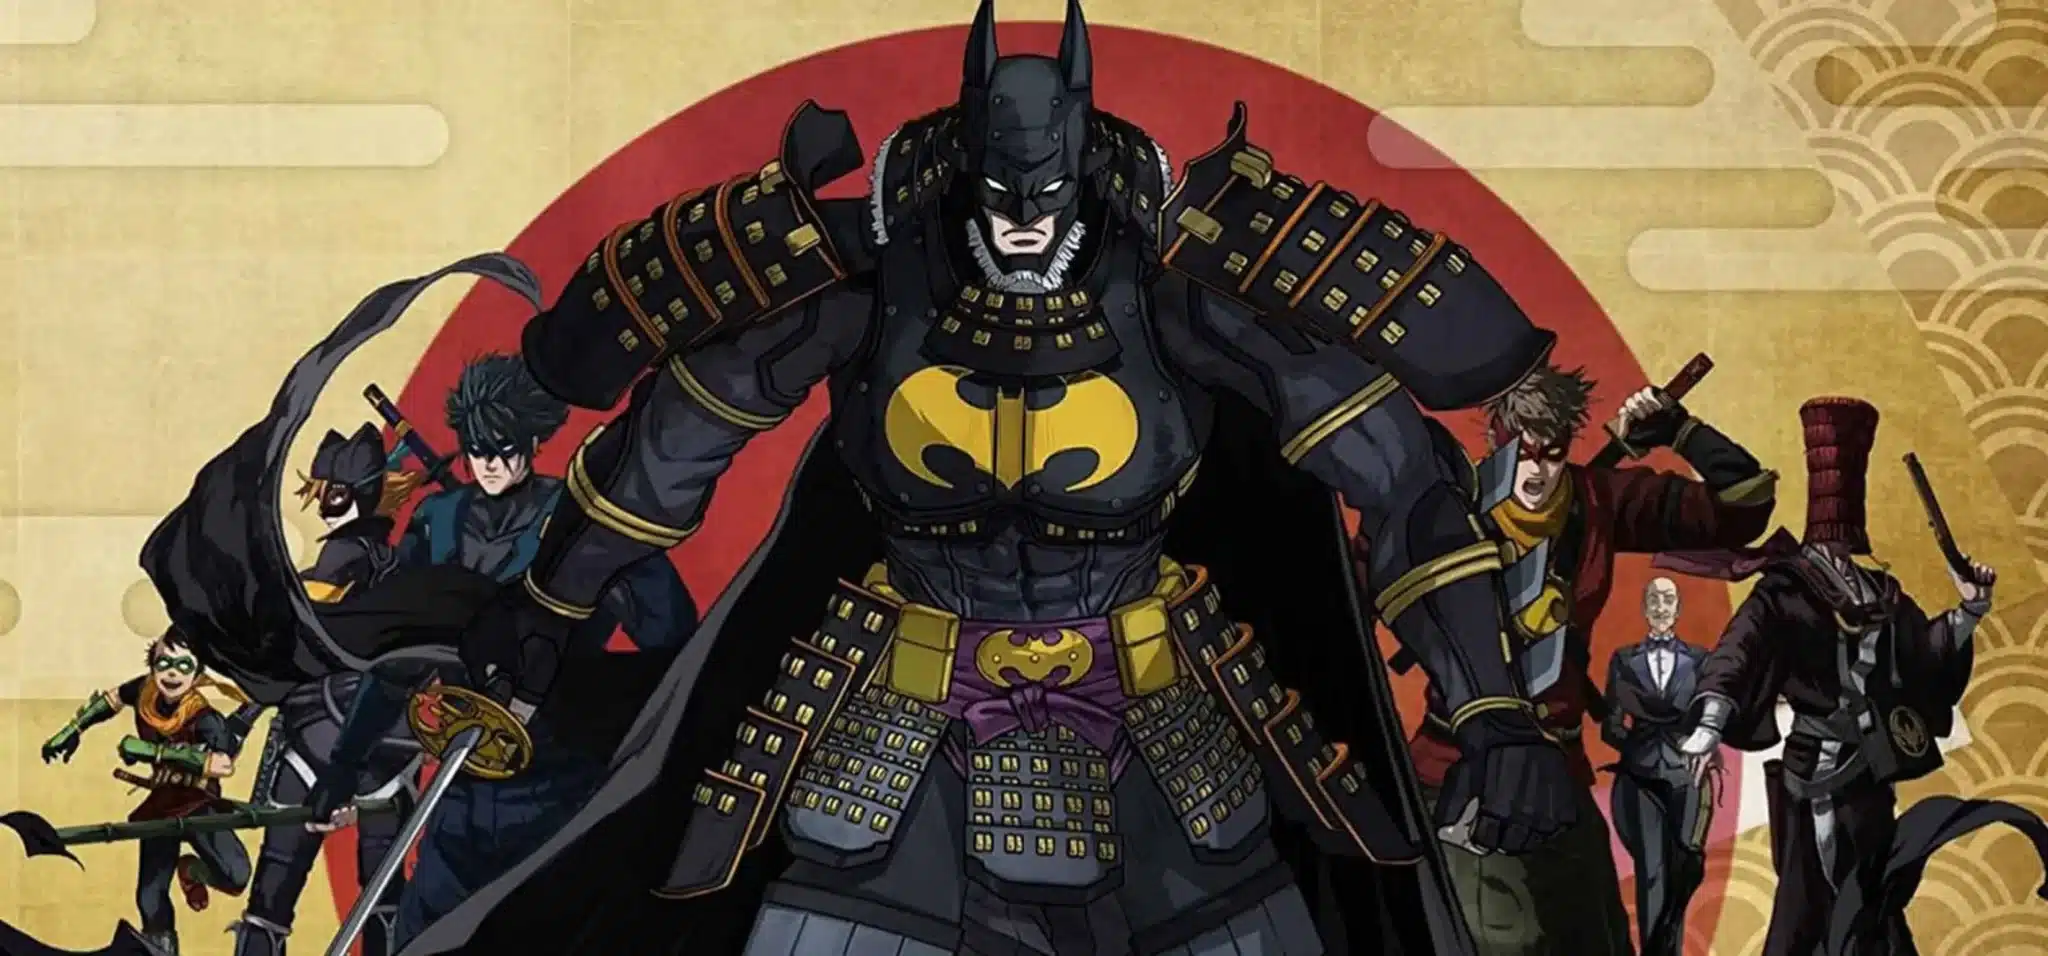 La Secuela De “Batman Ninja” De Dc Comics Es Anunciada De Forma Oficial